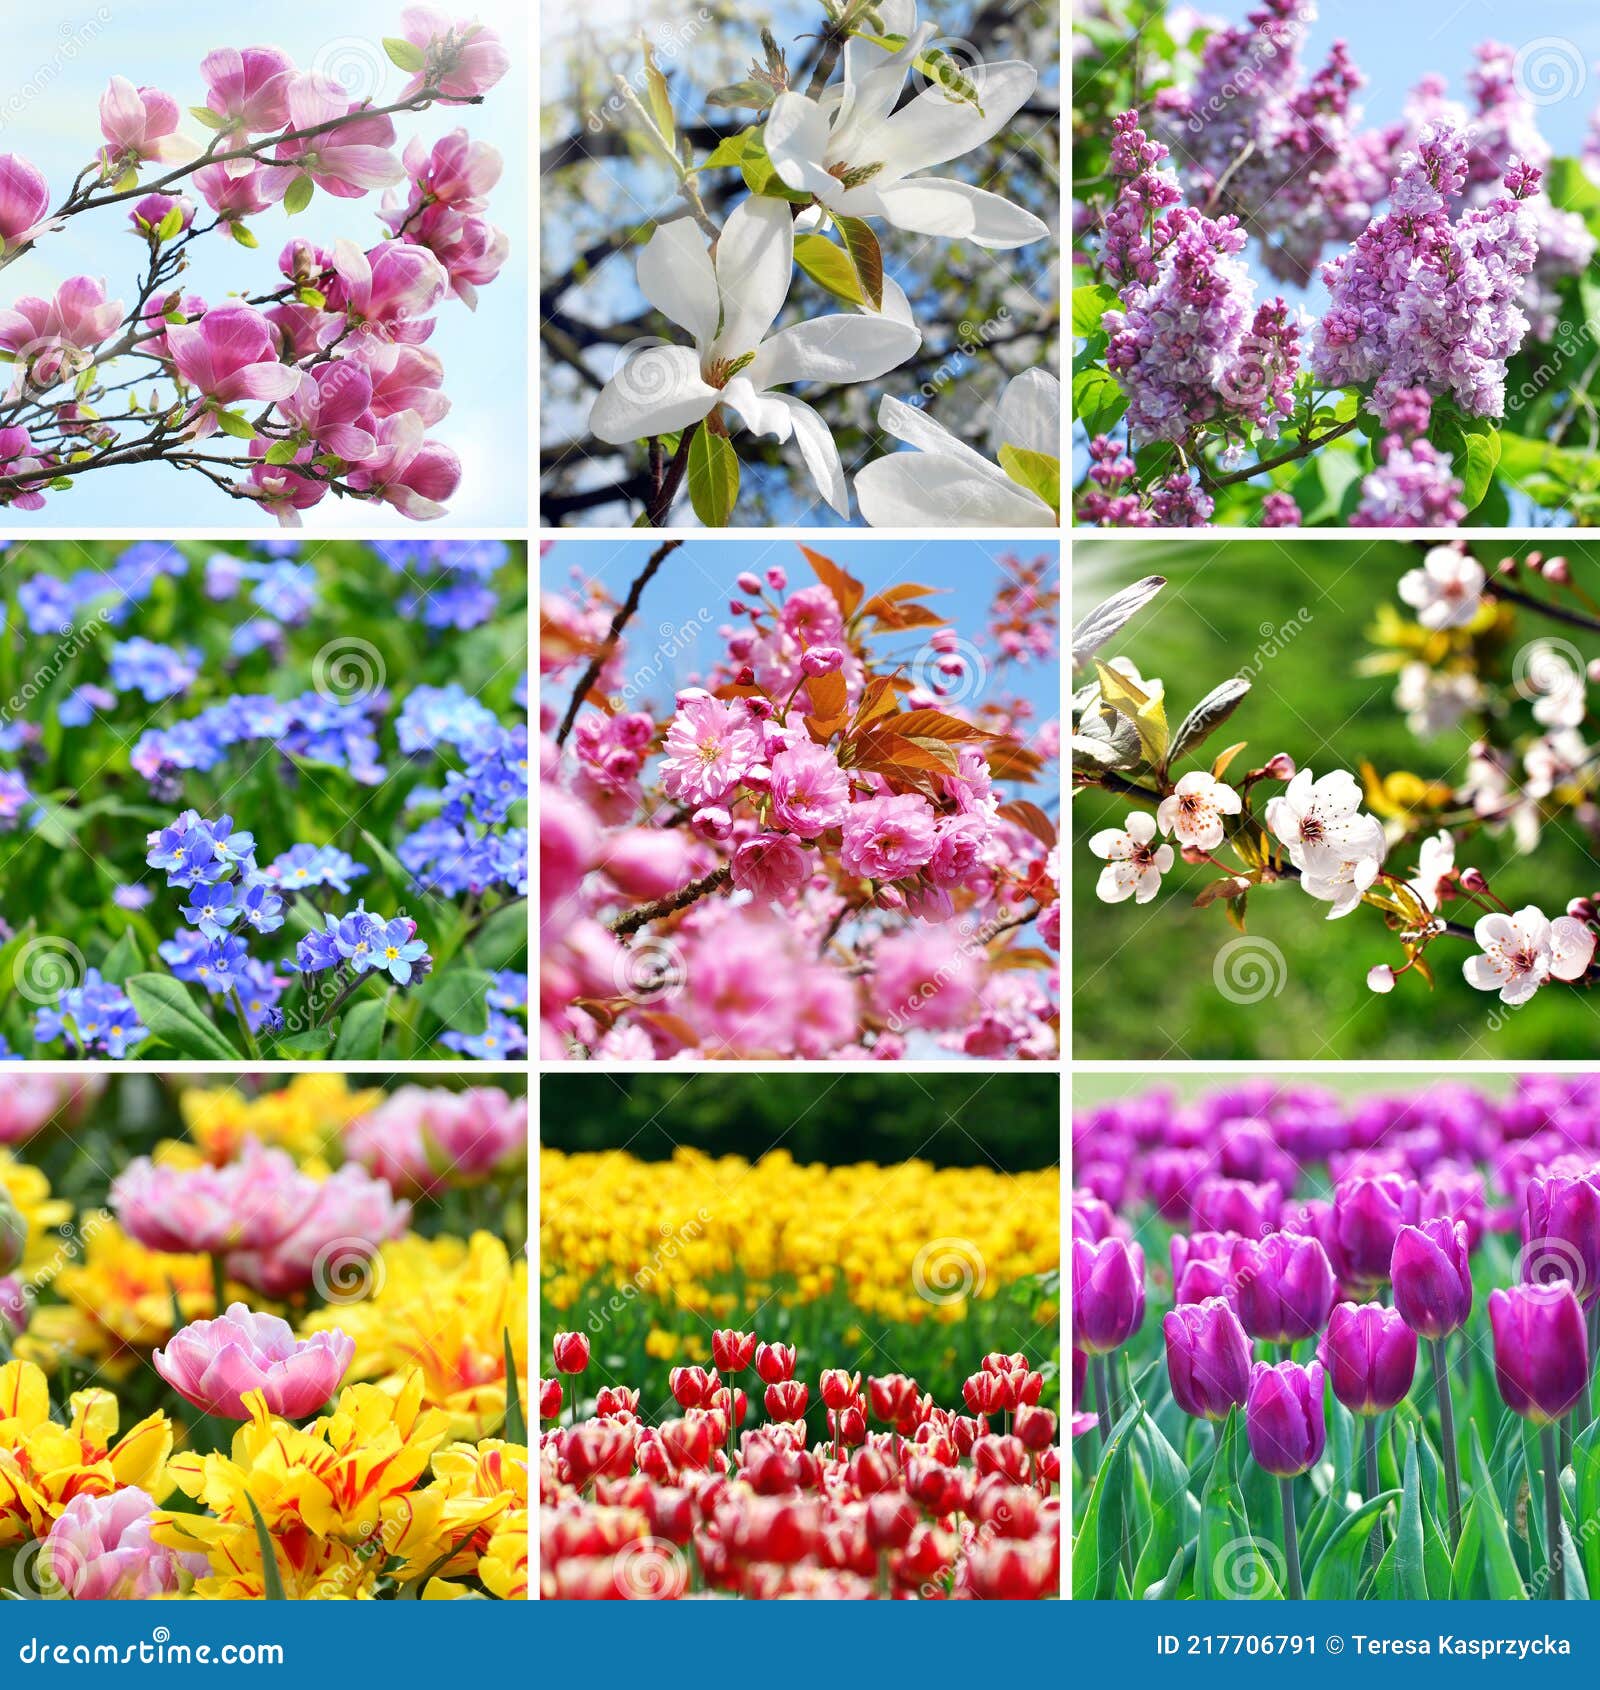 Collage De Primavera Con Coloridas Imágenes De Flores De Temporada Imagen  de archivo - Imagen de exterior, estacional: 217706791